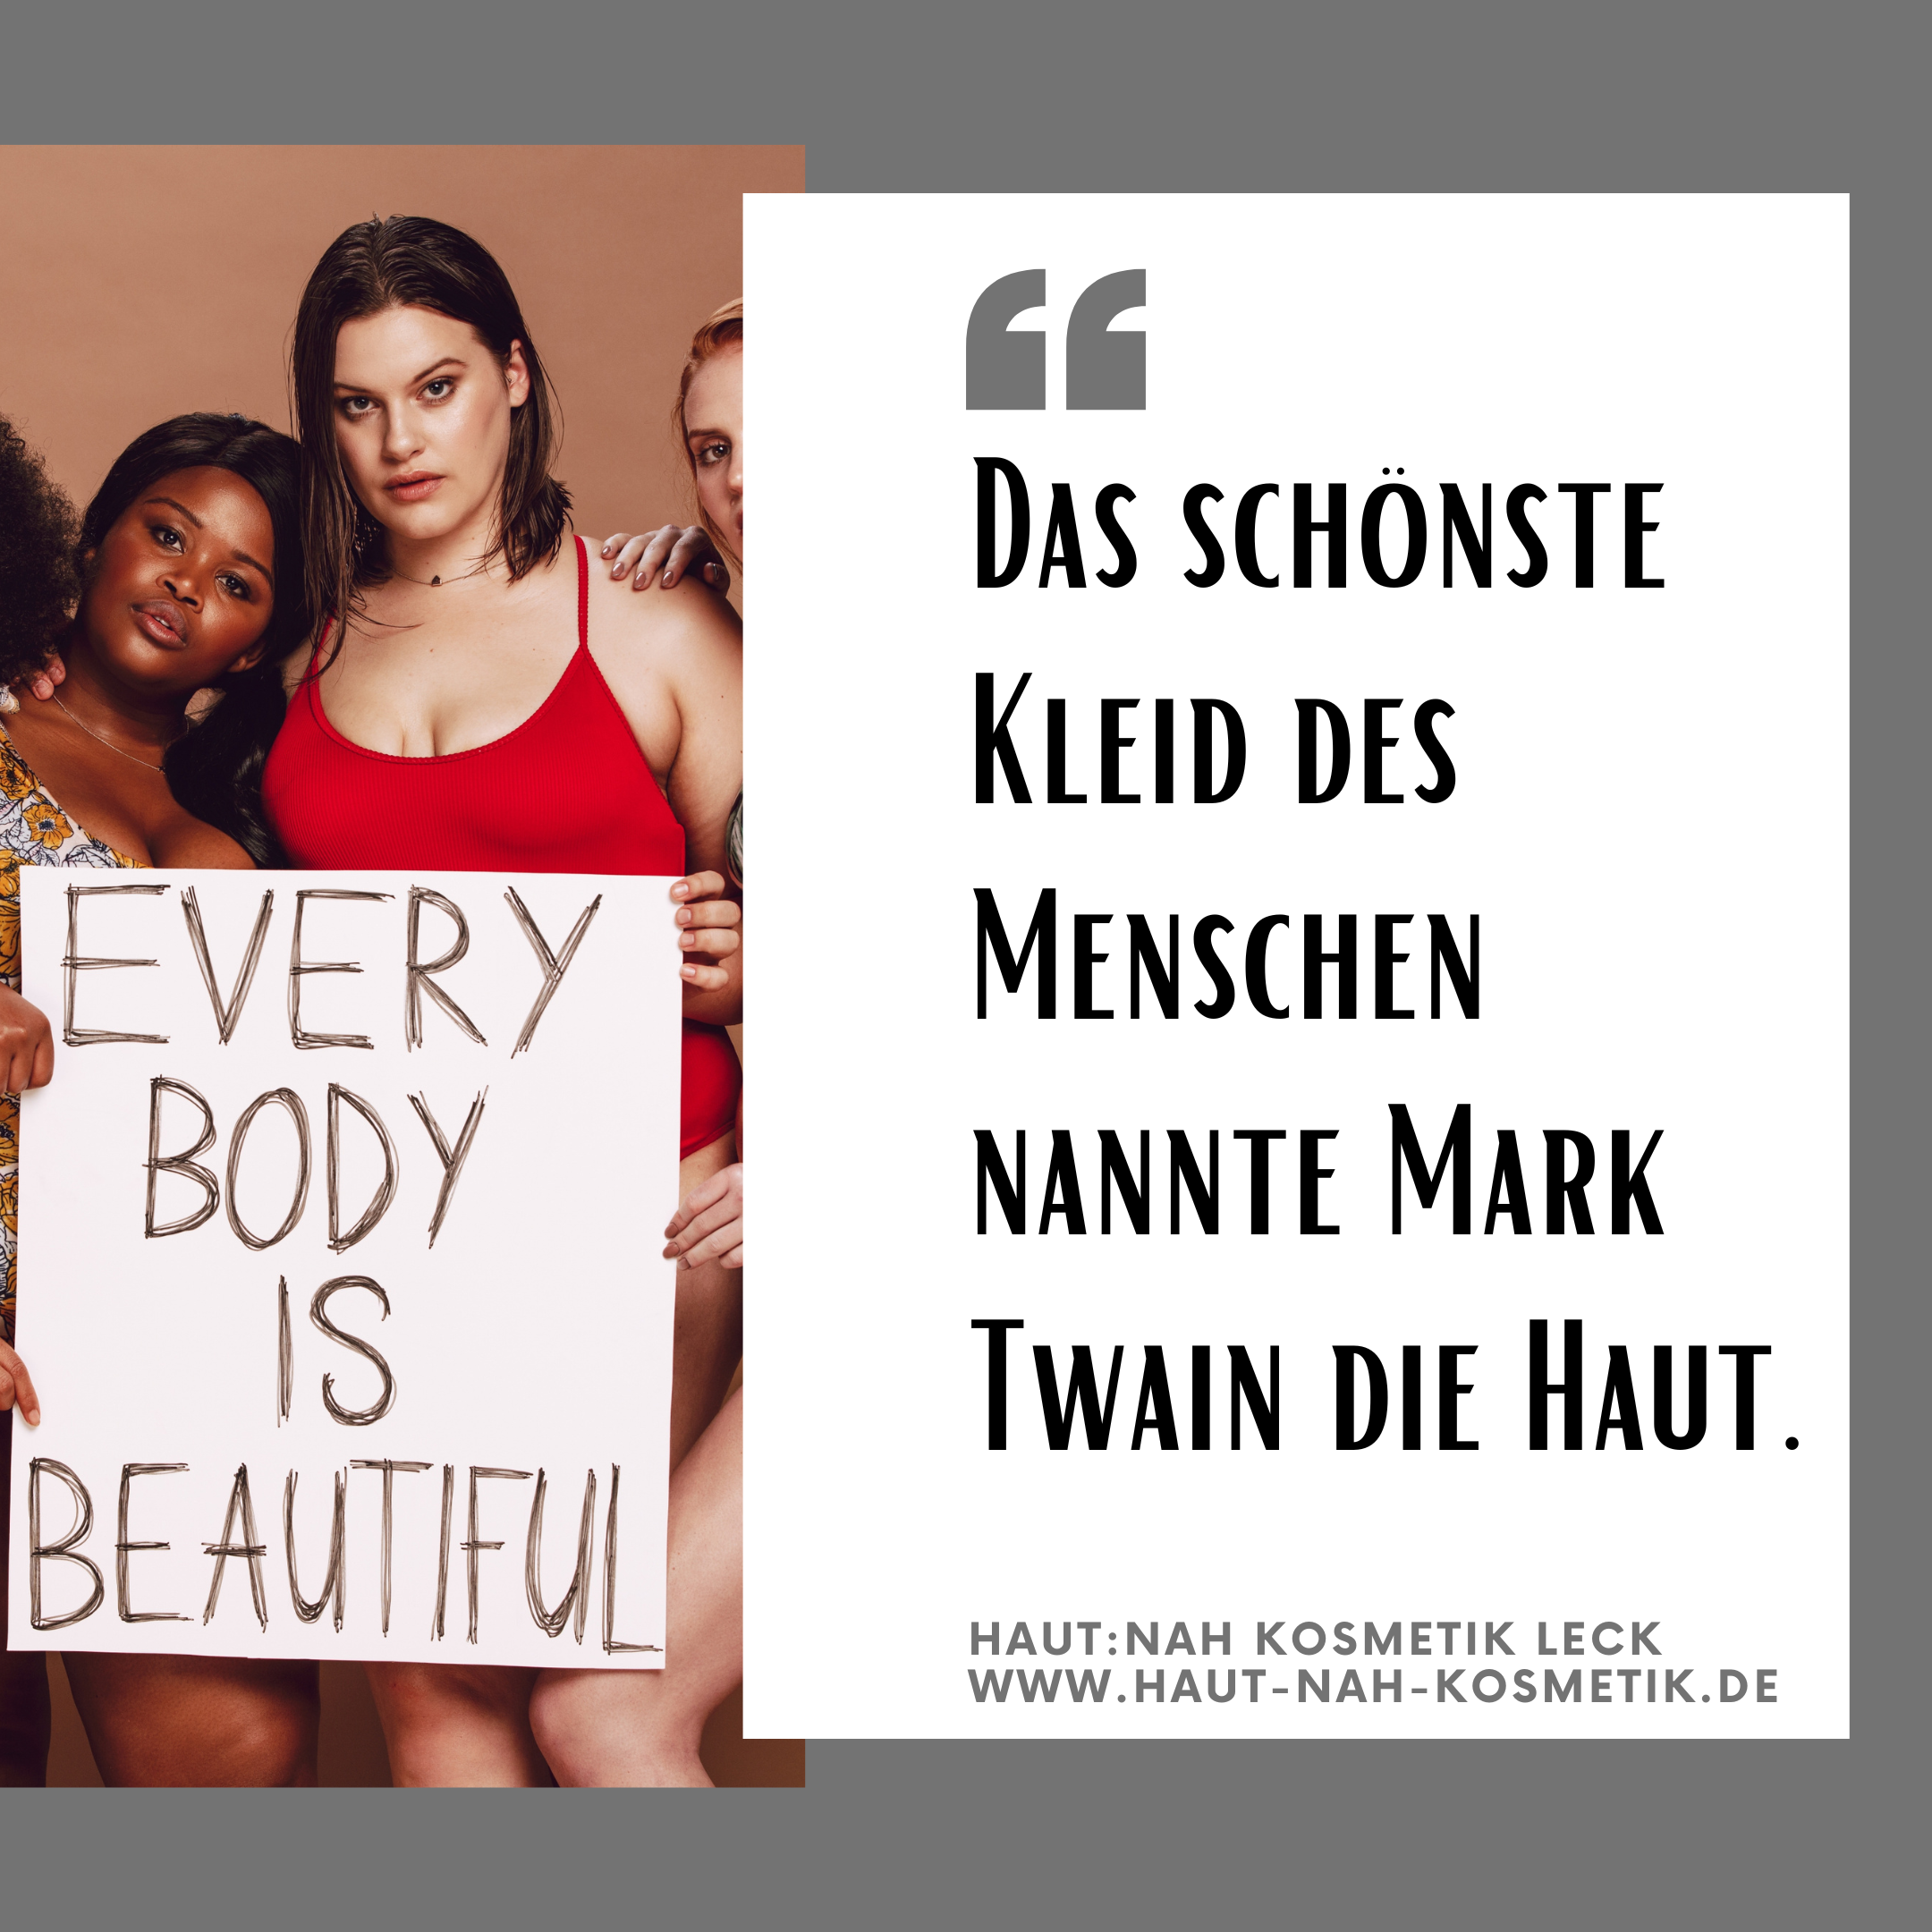 Featured image for “Pass auf Deine Haut auf!”